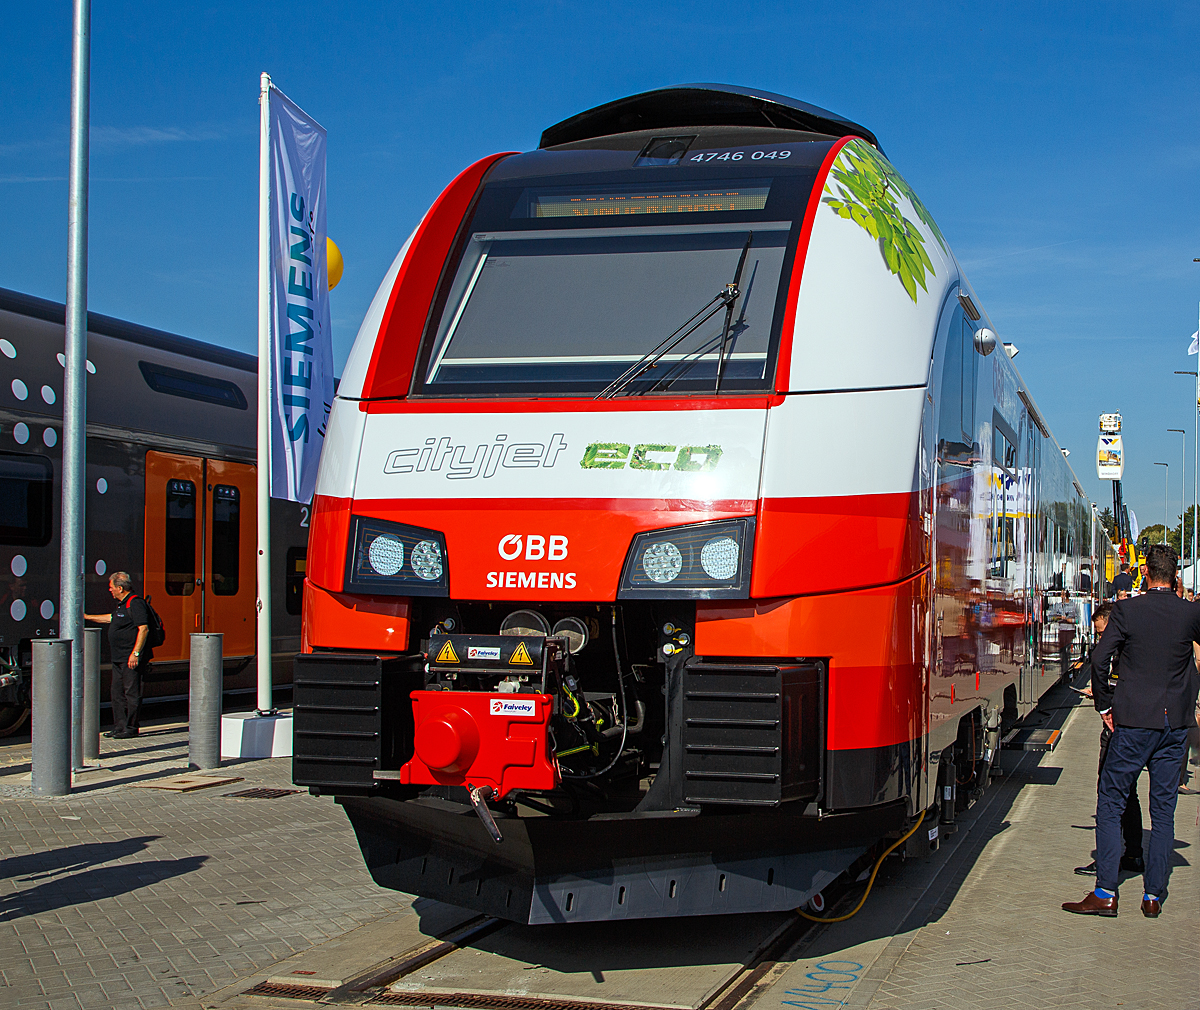 
Der ÖBB Cityjet eco eine Innovation auf Schiene....
Siemens und ÖBB präsentierte auf der InnoTrans 2018 in Berlin (hier 18.09.2018) mit dem ÖBB 4746 049 den Prototyp ÖBB Cityjet eco, ein elektro-hybriden Siemens Desiro ML, eine Innovation auf der Schiene.

ÖBB und Siemens setzen mit dem Cityjet eco neue Maßstäbe auf nicht-elektrifizierten Strecken im Nah- und Regionalverkehr. Mit diesem Zug kann künftig eine nachhaltige Alternative zu Dieselfahrzeugen abseits der Hauptverkehrsrouten geboten werden.

Der Cityjet eco ist eine Alternative für nicht-elektrifizierte Strecken, die heute größtenteils mit dieselbetriebenen Personenzügen befahren werden. Siemens entwickelt einen elektro-hybriden Batterieantrieb, der es möglich macht, dass der Zug auf elektrifizierten Strecken Energie über seinen Stromabnehmer aufnimmt und gleichzeitig in den neu mitgeführten Batterien speichert. Diese Energie kann für den Betrieb auf nicht-elektrifizierten Strecken genutzt werden. Sobald der Zug die elektrifizierte Strecke verlässt, speisen die Batterien das Energieversorgungssystem des Zuges (bis zu ca.80 km). Gemeinsam mit den ÖBB wird diese Technologie nun in einem Pilotprojekt in den kommenden Monaten in der Praxis auf Herz und Nieren geprüft und zur Serienreife weiterentwickelt.

Das Pilotprojekt wird mit einem Zug aus der aktuell für die ÖBB laufenden Serienproduktion des Siemens Desiro ML umgesetzt. Die Bauweise des Fahrzeuges ermöglicht es, zusätzliche Dachlasten aufzunehmen. Damit sinkt die ansonsten branchenweit übliche Liefer- und Fertigungszeit eines Neufahrzeugs von bis zu 36 Monaten auf weniger als die Hälfte.

Die laufende Serienfertigung des ÖBB Cityjets eröffnete die Möglichkeit einer kurzfristigen Entnahme eines Fahrzeugs sowie dessen Umbau zu einem Akku-Triebzug und kurzfristigen Einsatz als Prototypzug im Rahmen einer Erprobungsphase. Die Batterieanlage am Mittelwagen des umgebauten Triebfahrzeuges ÖBB 4746 049 / 549 der Serie DESIRO ML umfasst drei Batteriecontainer, zwei DC/DC-Steller, einen Batteriekühler sowie weitere Elektronikbauteile. Zum Einsatz kommen Lithium-Titanat-Batterien (LTO-Technologie). Diese modifizierten Batterien erlauben – verglichen mit herkömmlichen Lithium-Ionen-Batterien – deutlich höhere Ladeströme zur Schnellladung. Die Lebensdauer der Batterien soll bei Serienreife rund 15 Jahre betragen, was zur Folge hätte, dass sie über die Gesamtnutzungsdauer des Zuges nur einmal gewechselt werden müssen.

TECHNISCHE DATEN:
Spurweite:1.435 mm
Achsfolge: Bo‘Bo‘+2‘2‘+Bo‘Bo‘
Länge (über Kupplung): 75.152 mm
Drehzapfenabstand: 16.240 mm
Achsabstand im Drehgestell: 2.300 mm
Antriebsleistung: 2.600 kW (ca. 1.300kW im Batterie-Modus)
Höchstgeschwindigkeit: 140 km/h (120 km/h im Batterie-Modus)
Installierte Batteriekapazität: 528 kWh
Anfahrbeschleunigung1,0 m/s² (0.77 m/s² im Batterie-Modus)
Stromsystem: 15 kV 16,7 Hz AC / 25 kV, 50 Hz AC
Fußbodenhöhe: 600 mm
Fahrgastkapazität: 244 Sitzplätze 
Max. Achslast: kleiner 17 t 
